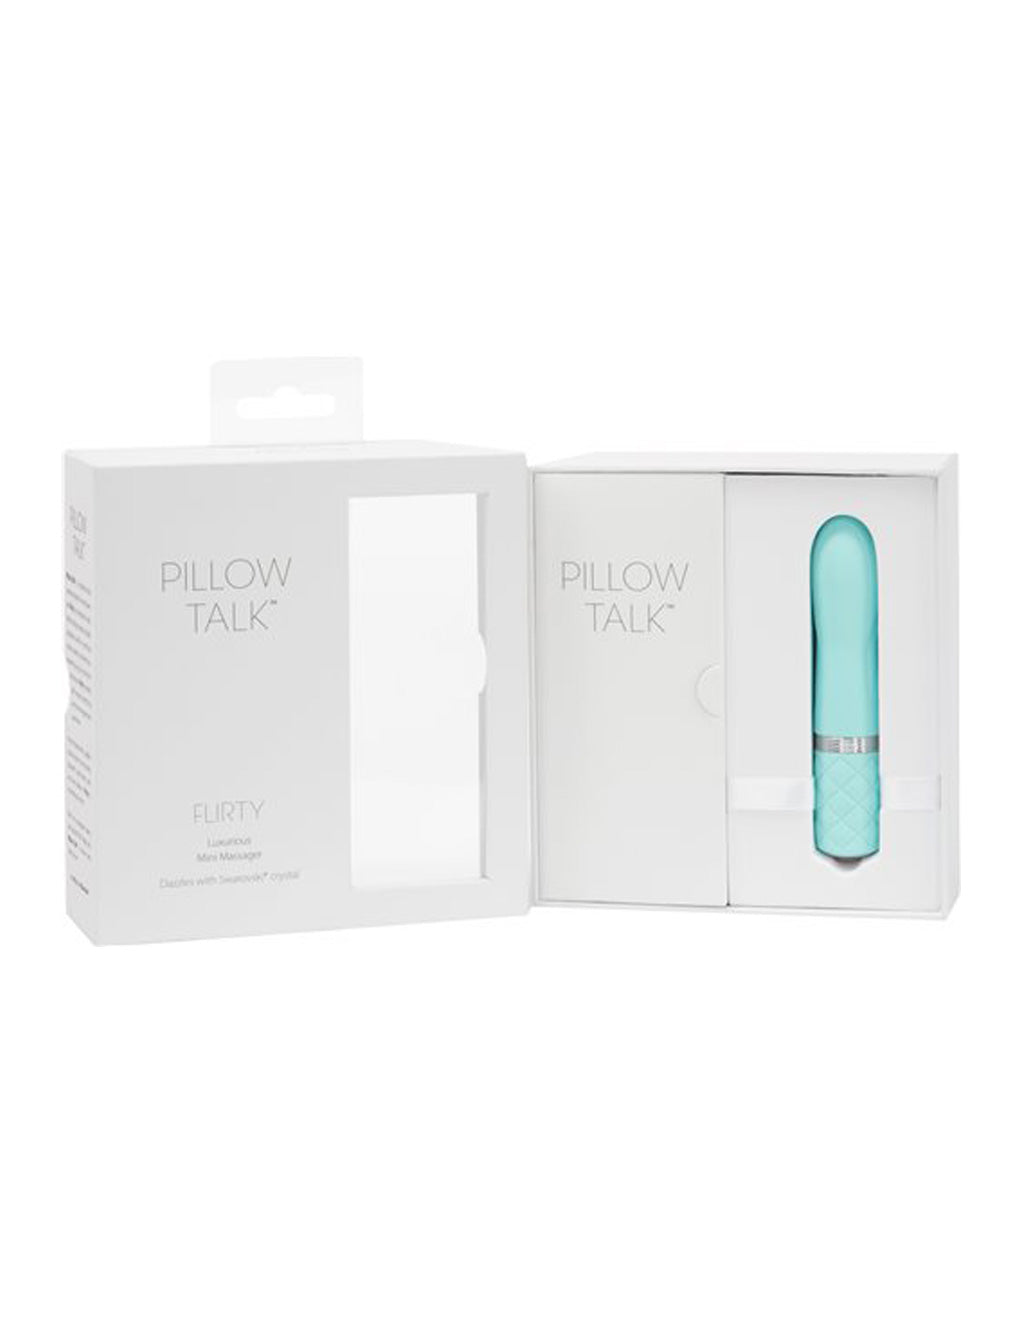 Pillow Talk Flirty by BSM Factory Teal Box